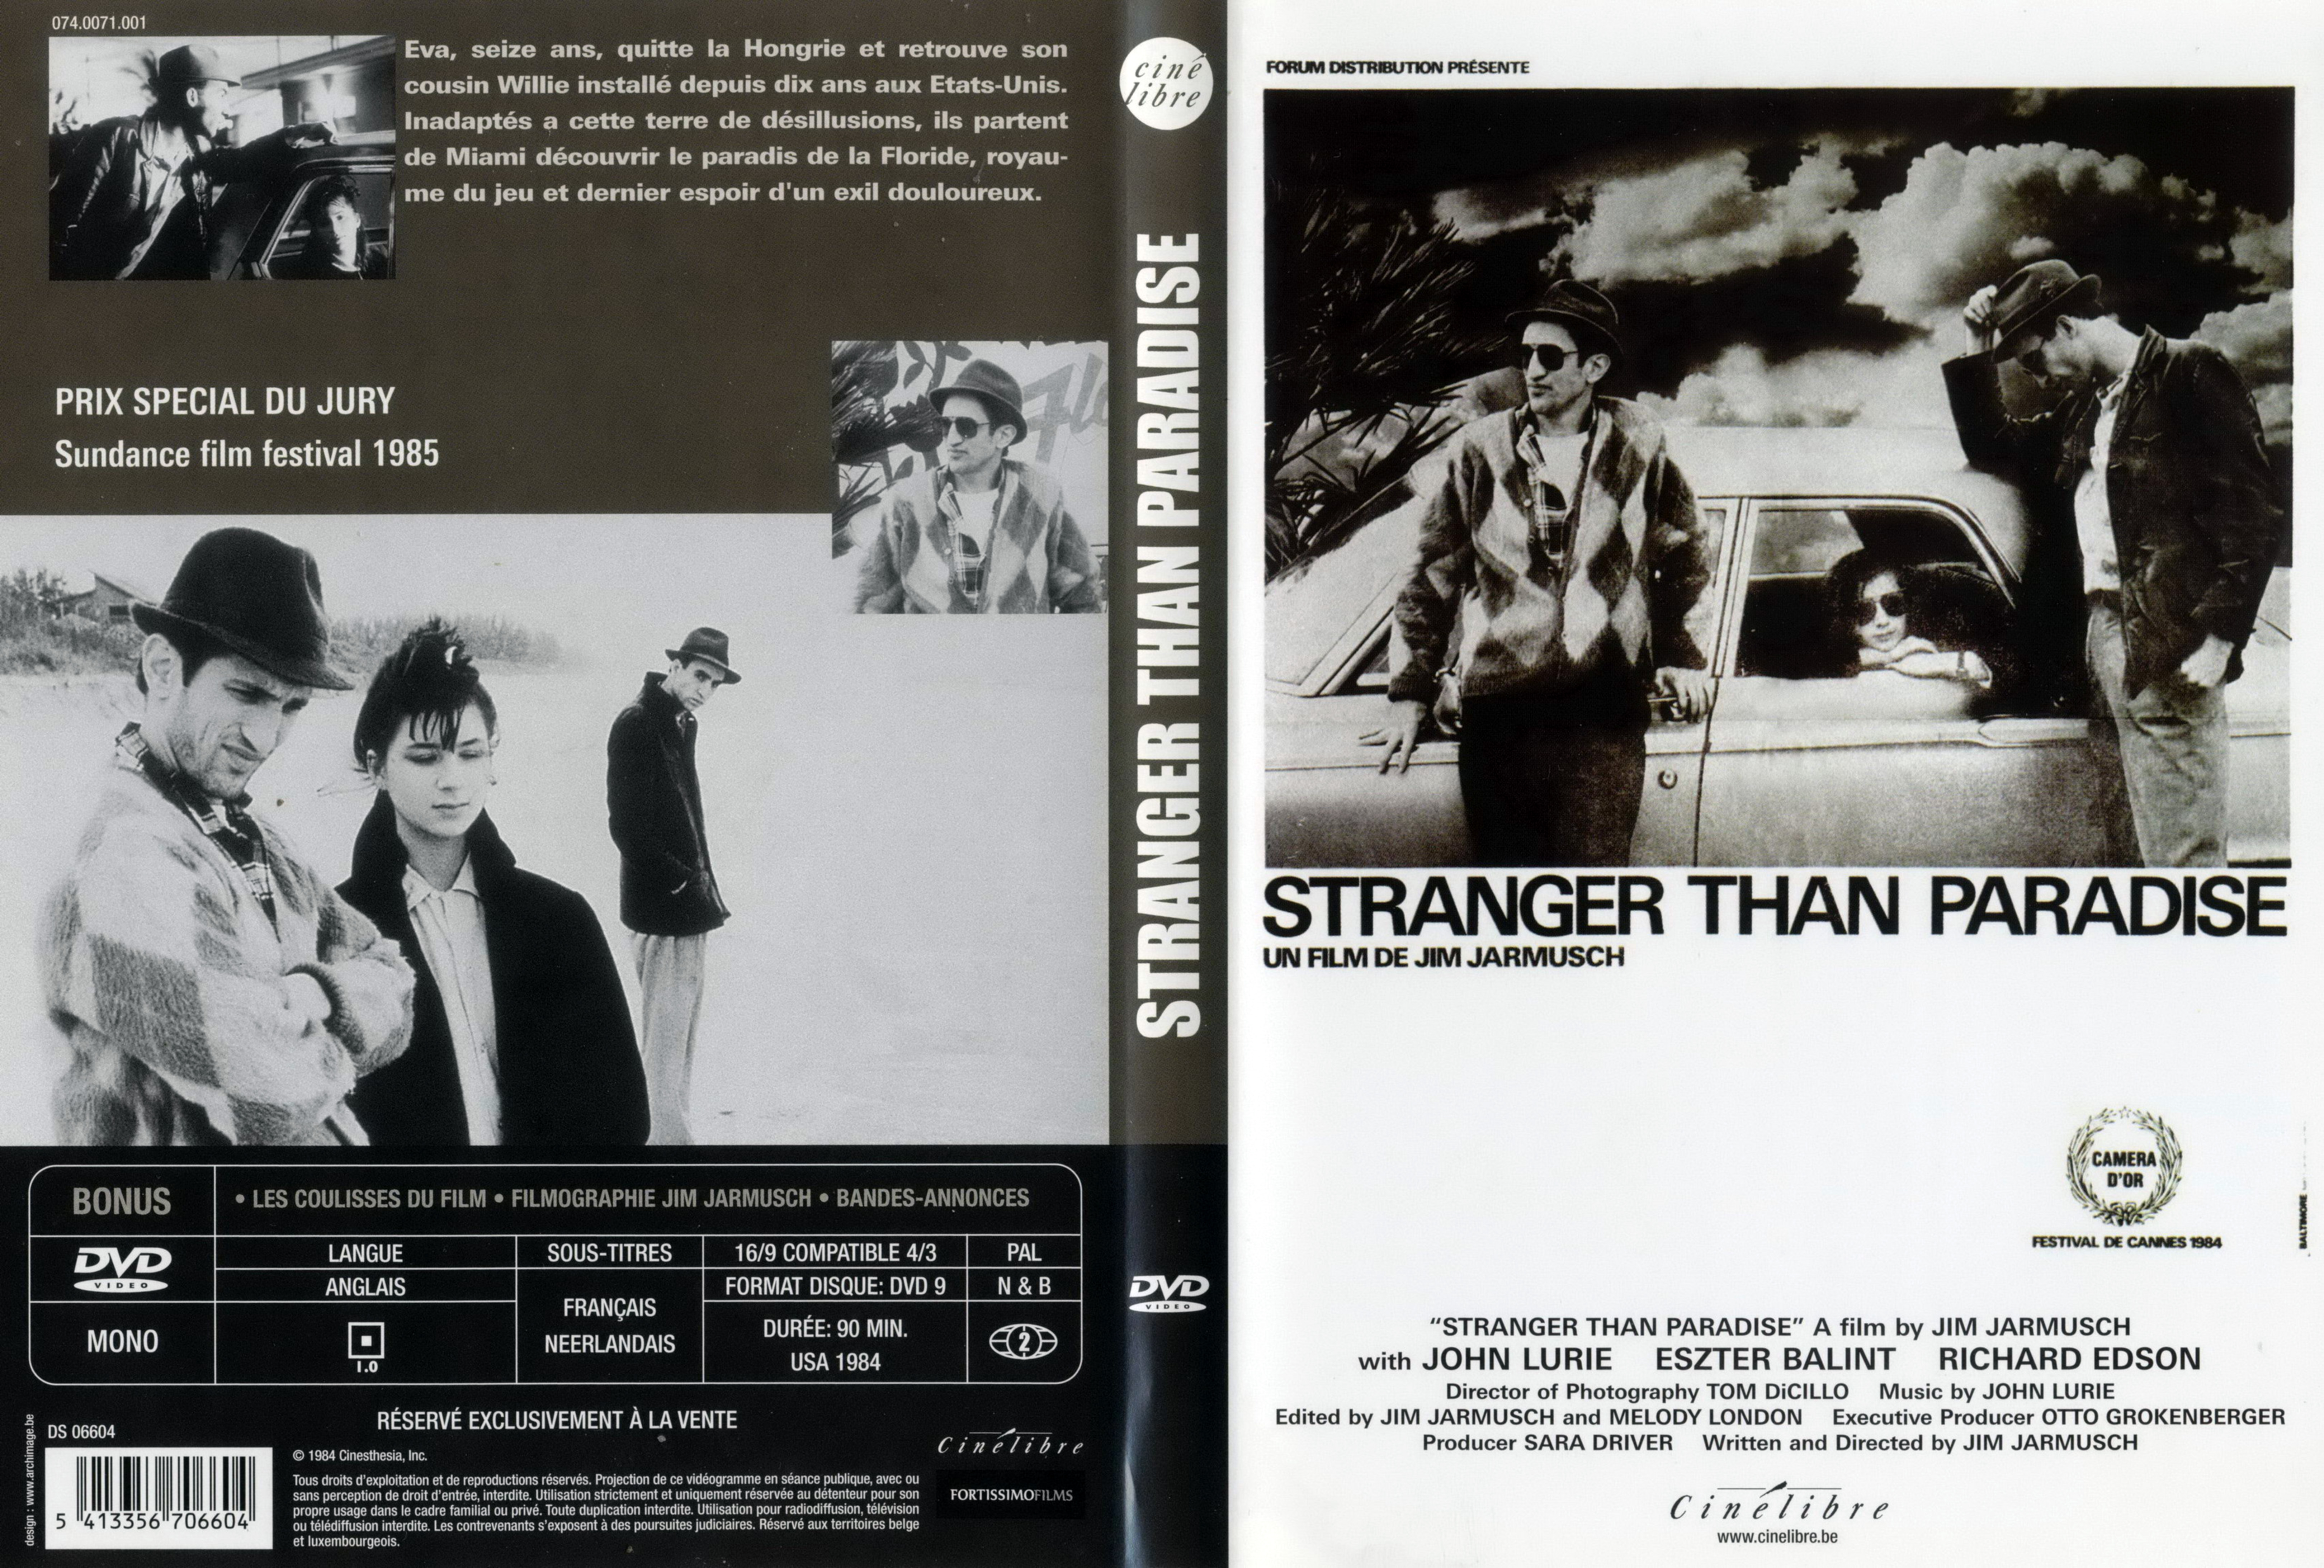 Jaquette DVD Stranger than paradise v2